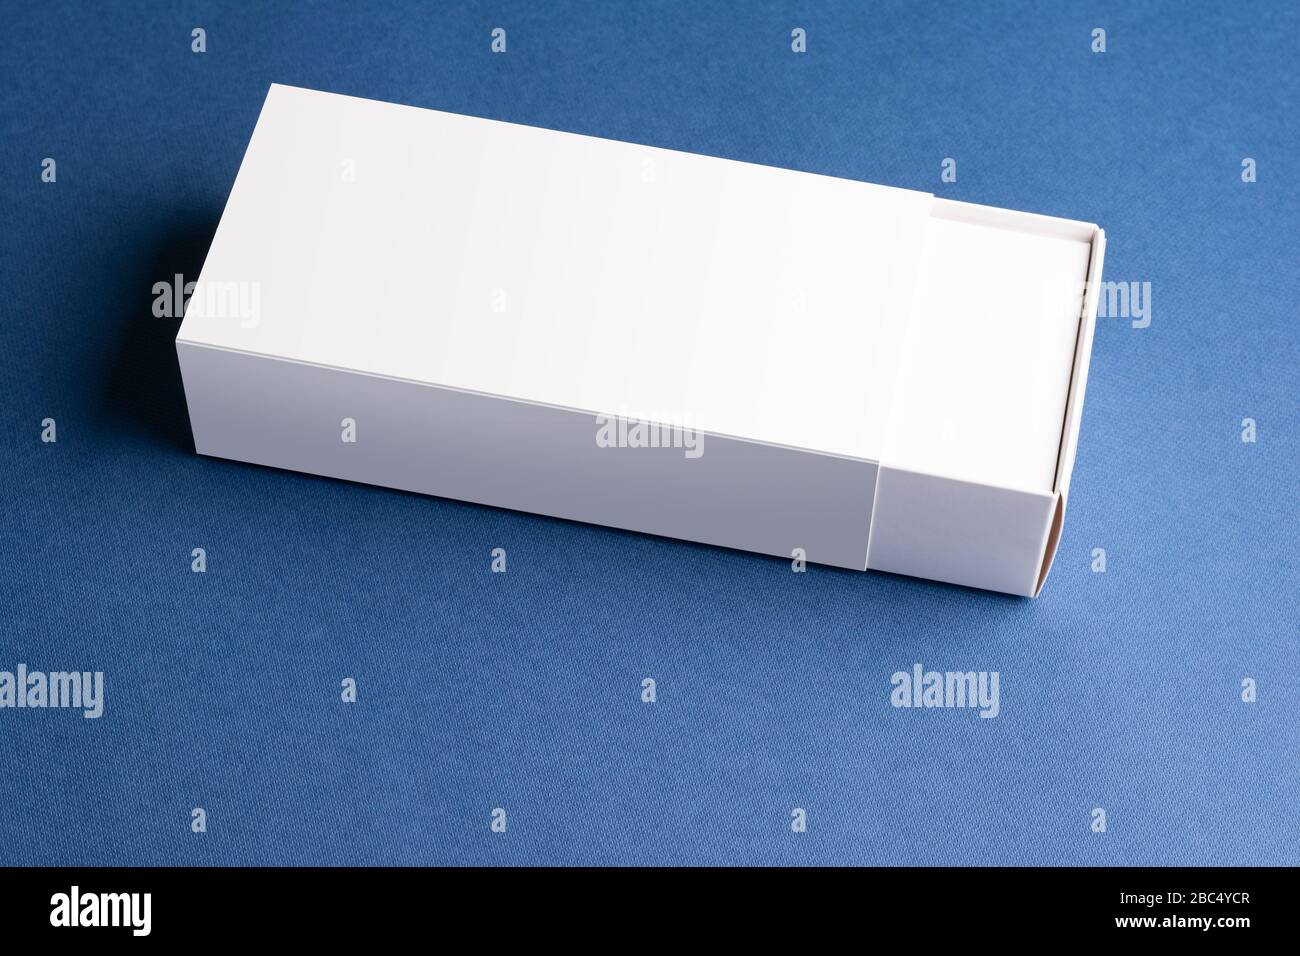 Le scatole estraili dello smartphone su una superficie blu, modello mock-up modificabile pronto per il tuo progetto Foto Stock